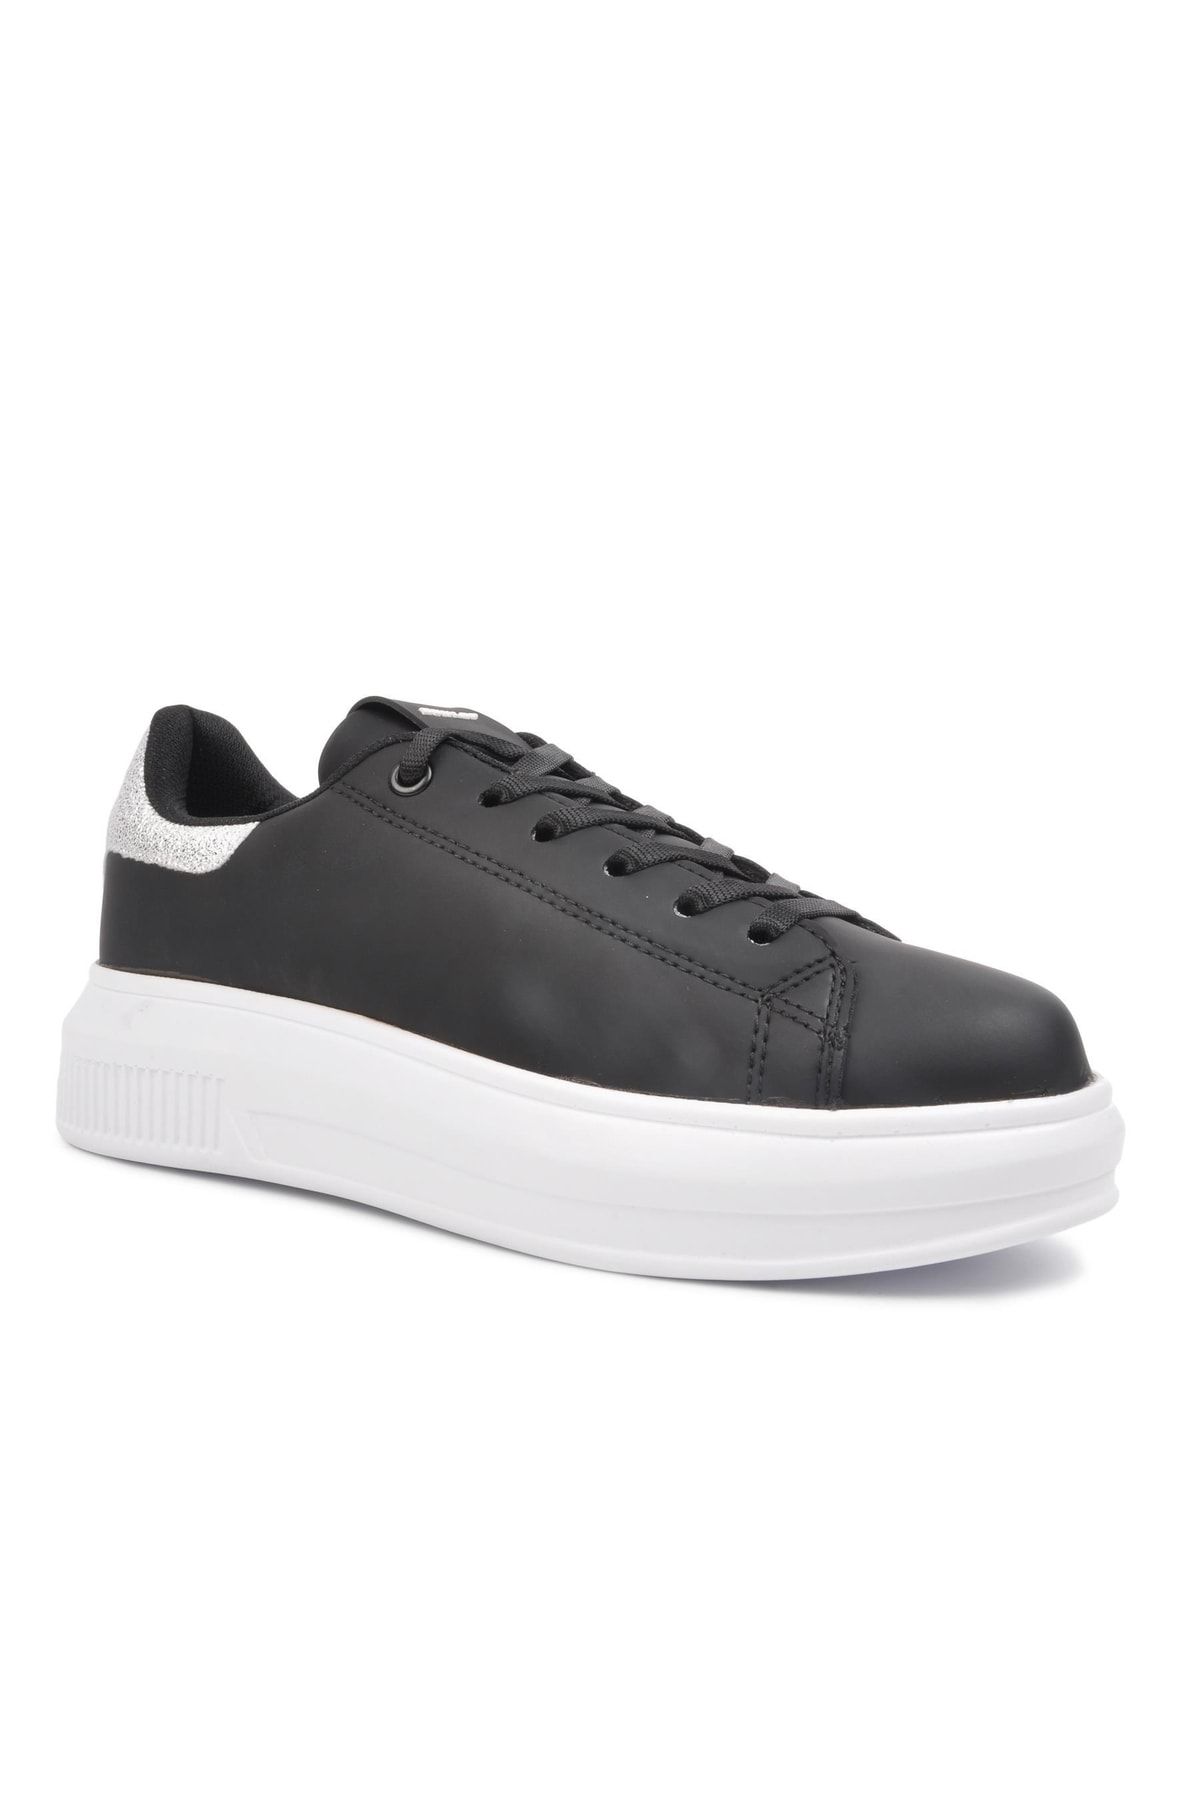 Dunlop Dnp-4344 Siyah-beyaz Kadın Kalın Taban Sneaker